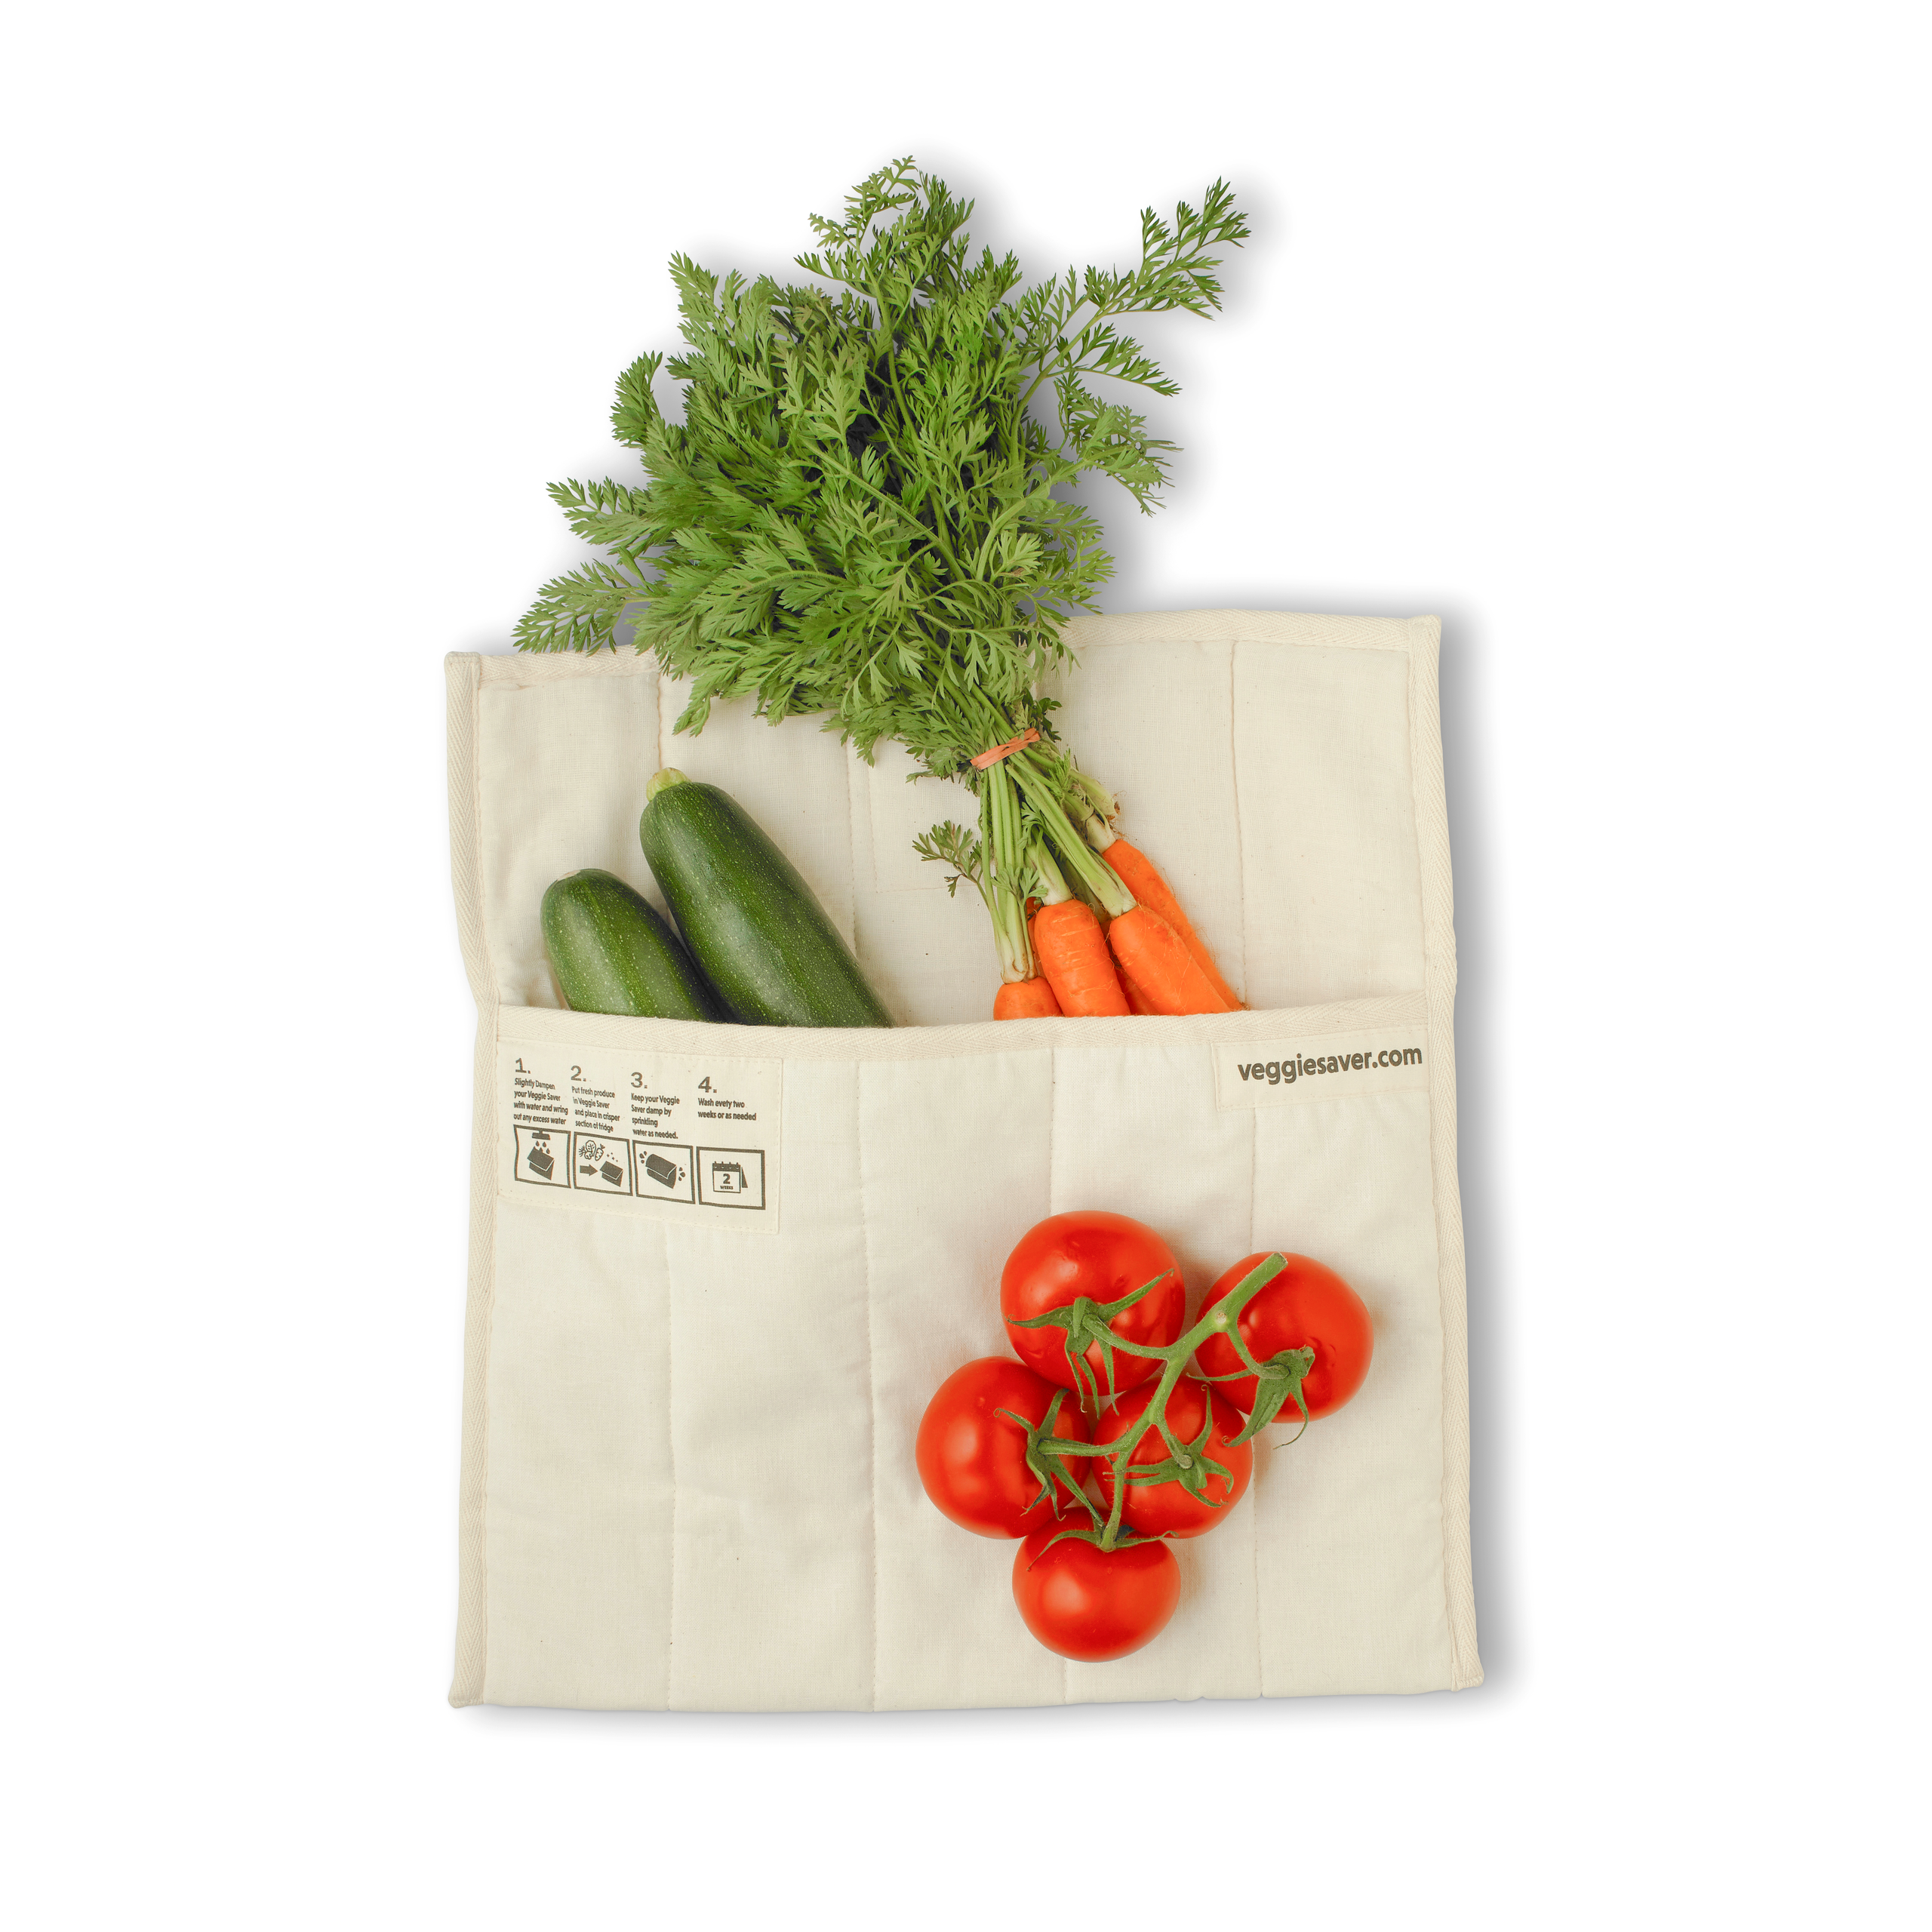 Veggie Saver Natural Nontoxic Reusable Easy Care Produce Bag